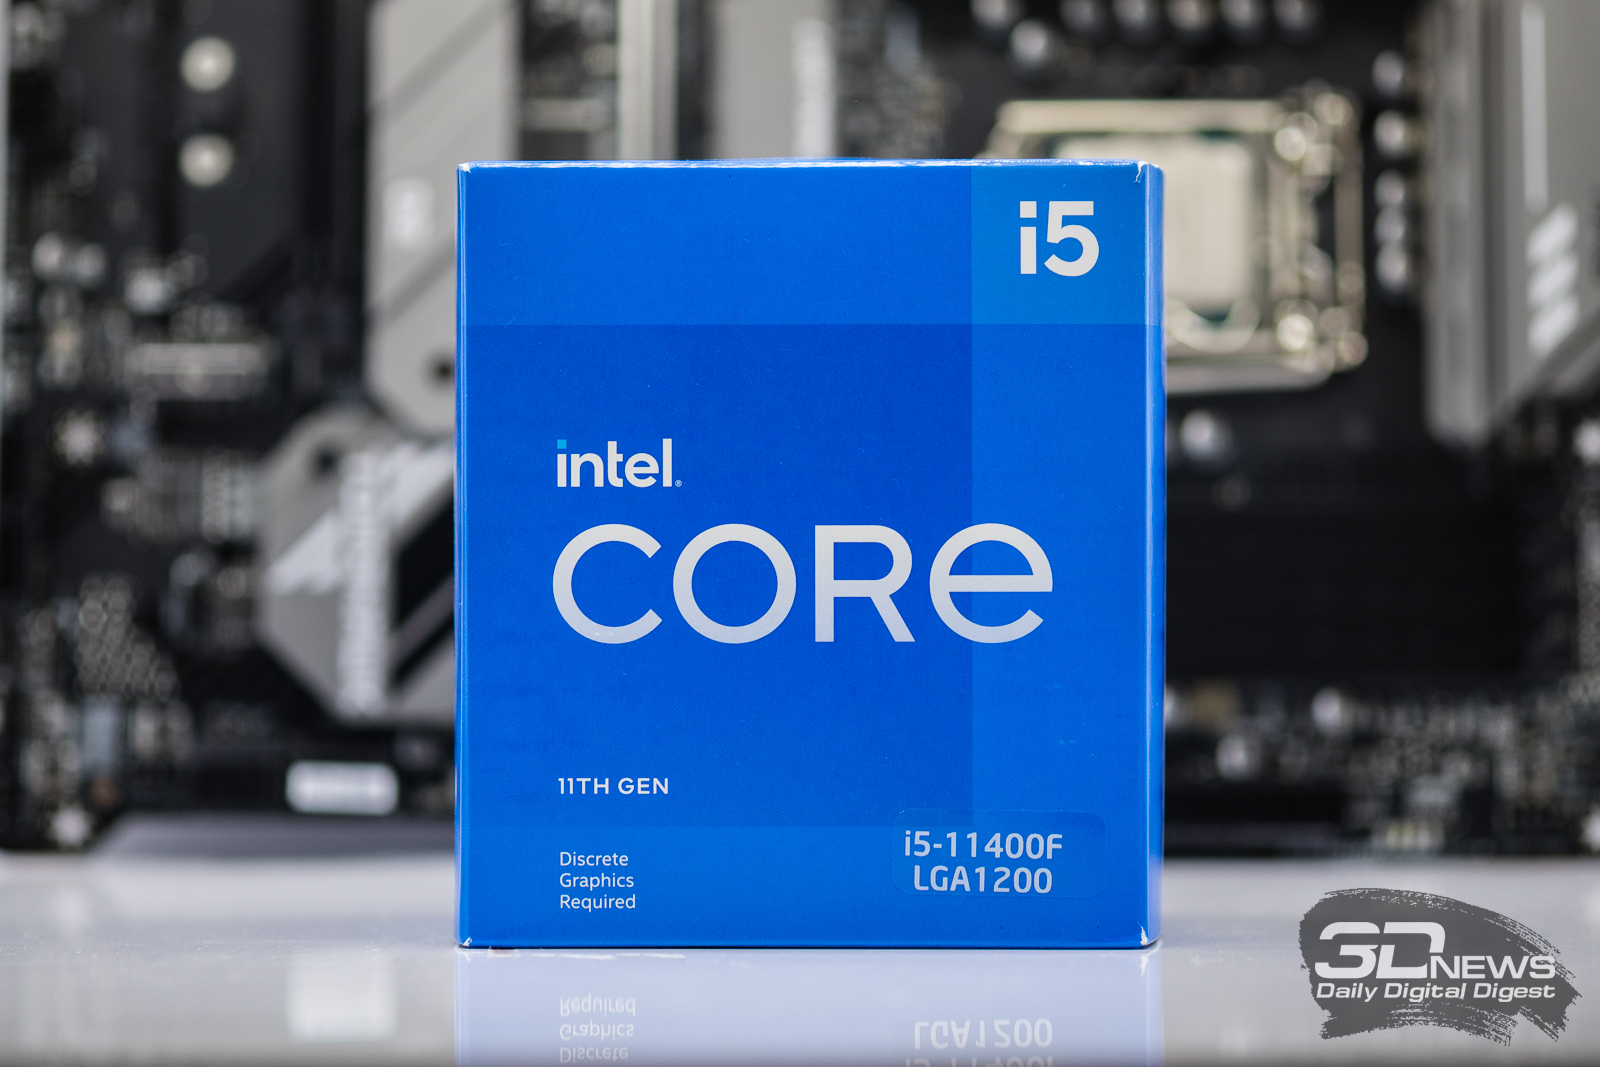 Процессор intel core i5 частота процессора. Intel Core i5-11400f. Процессор Intel Core i5-11400 Box. Процессор Intel Core i5-11400 OEM. Процессор Intel Core i5 11400f, LGA 1200.